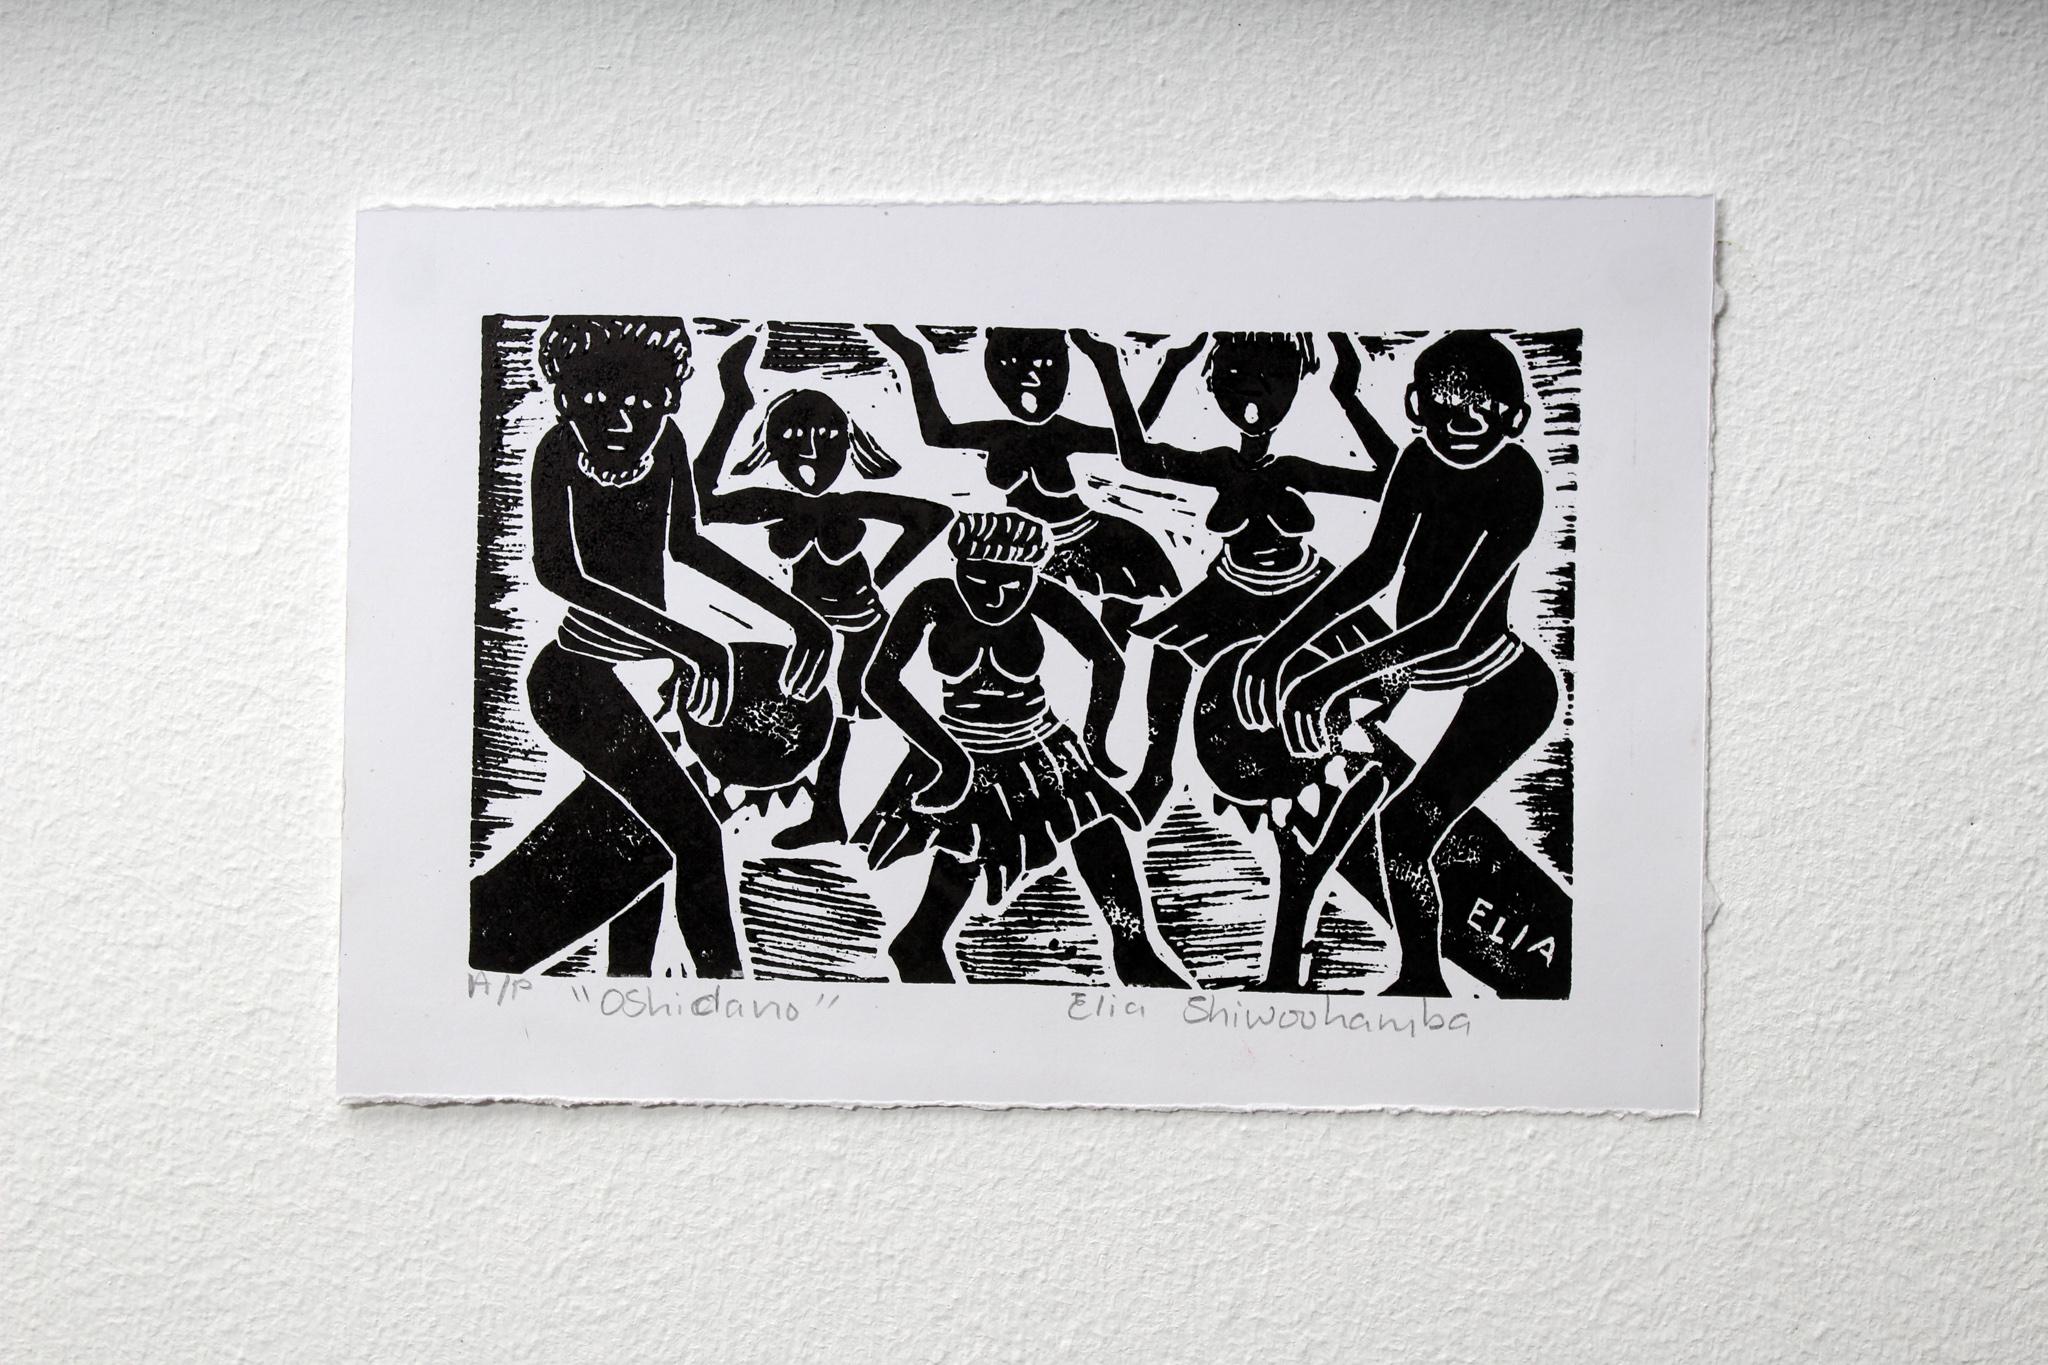 Oshidano, Impressions en blocs de linoléum sur papier.

Elia Shiwoohamba est née en 1981 à Windhoek, en Namibie. Il est diplômé du Centre d'art John Muafangejo de Windhoek en 2006. Spécialisé dans la gravure et la sculpture, Shiwoohamba est un